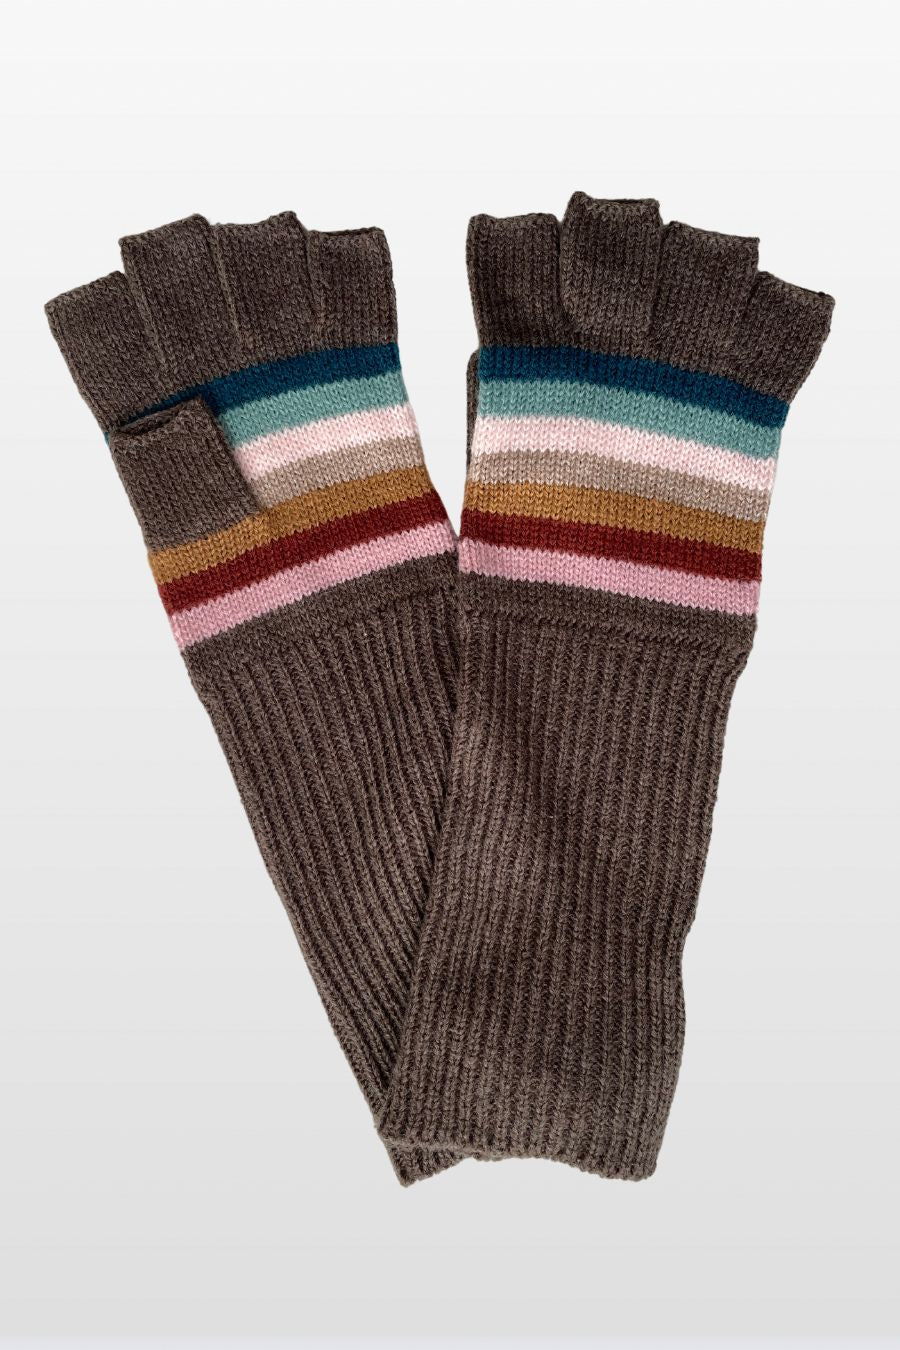 Stripe Knit Fingerless Gloves